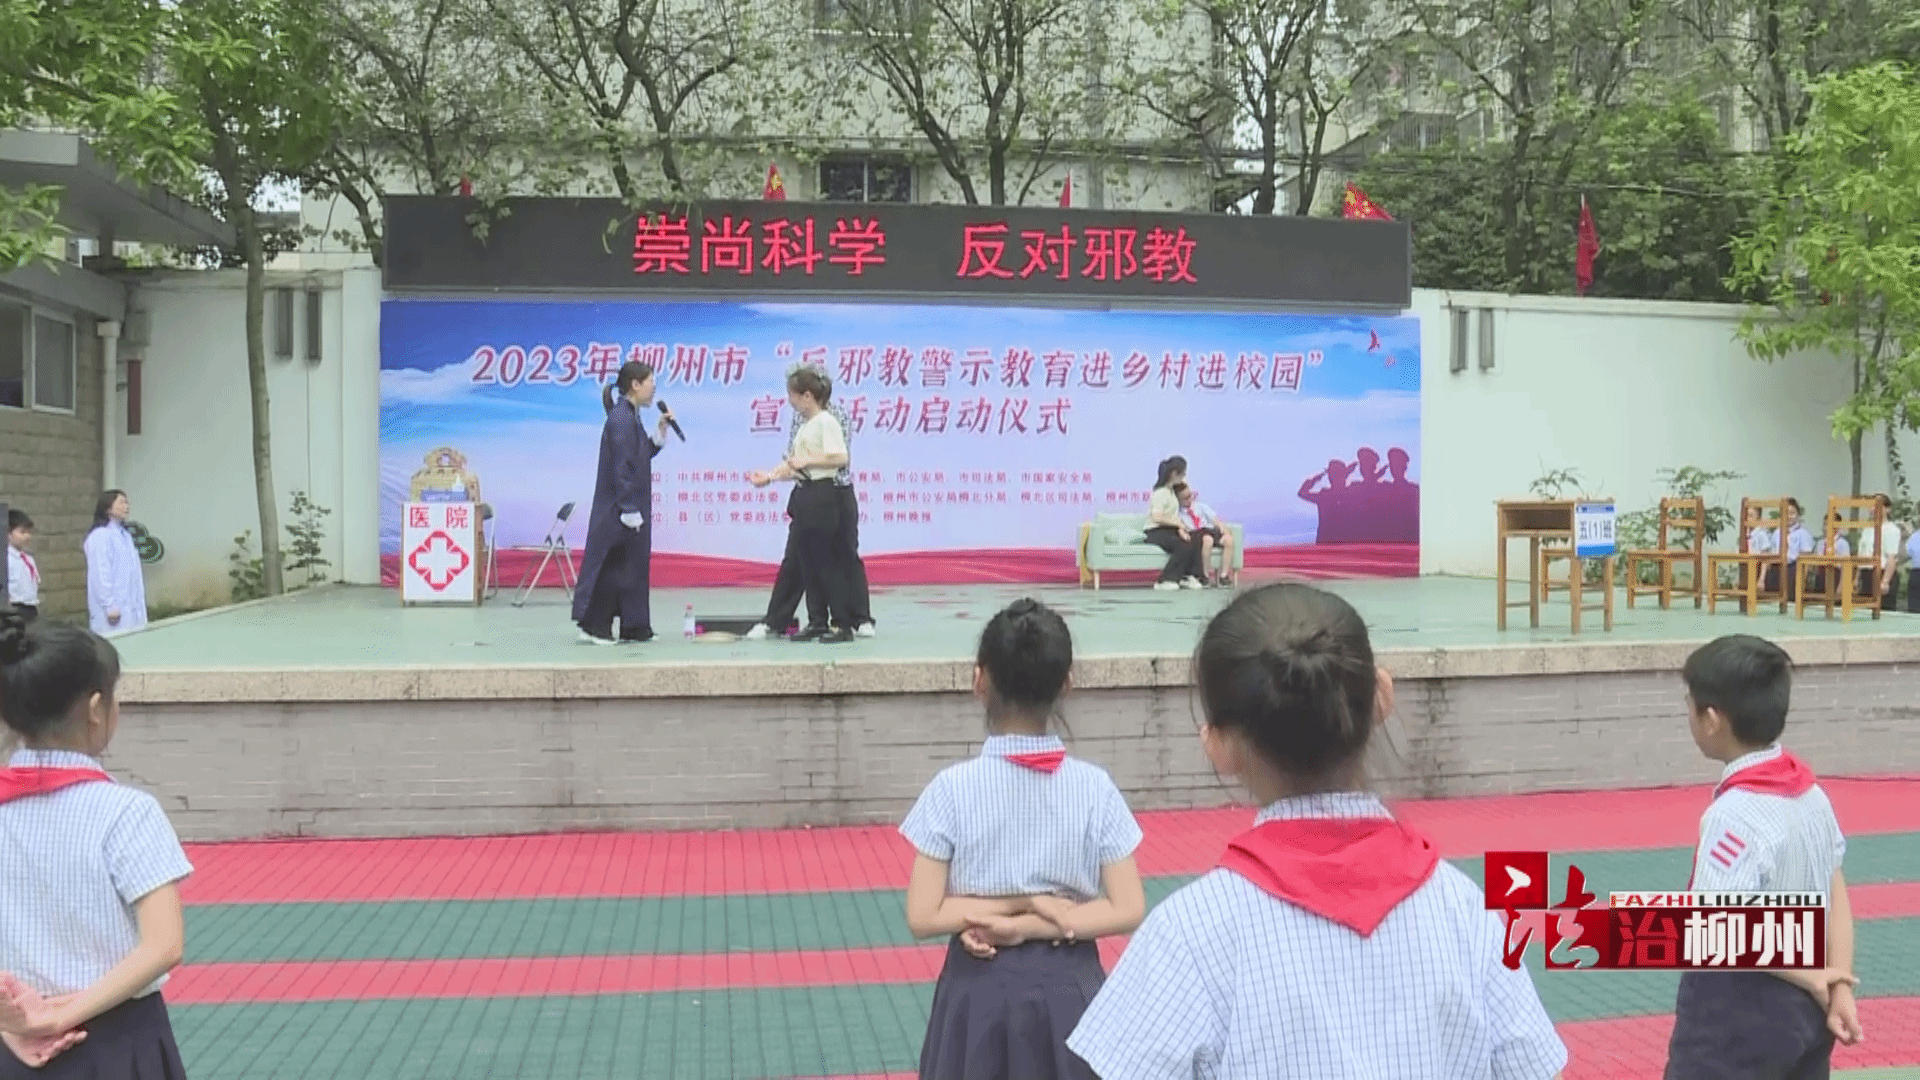 2023年广西柳州“反邪教警示教育进乡村进校园”宣传活动启动仪式